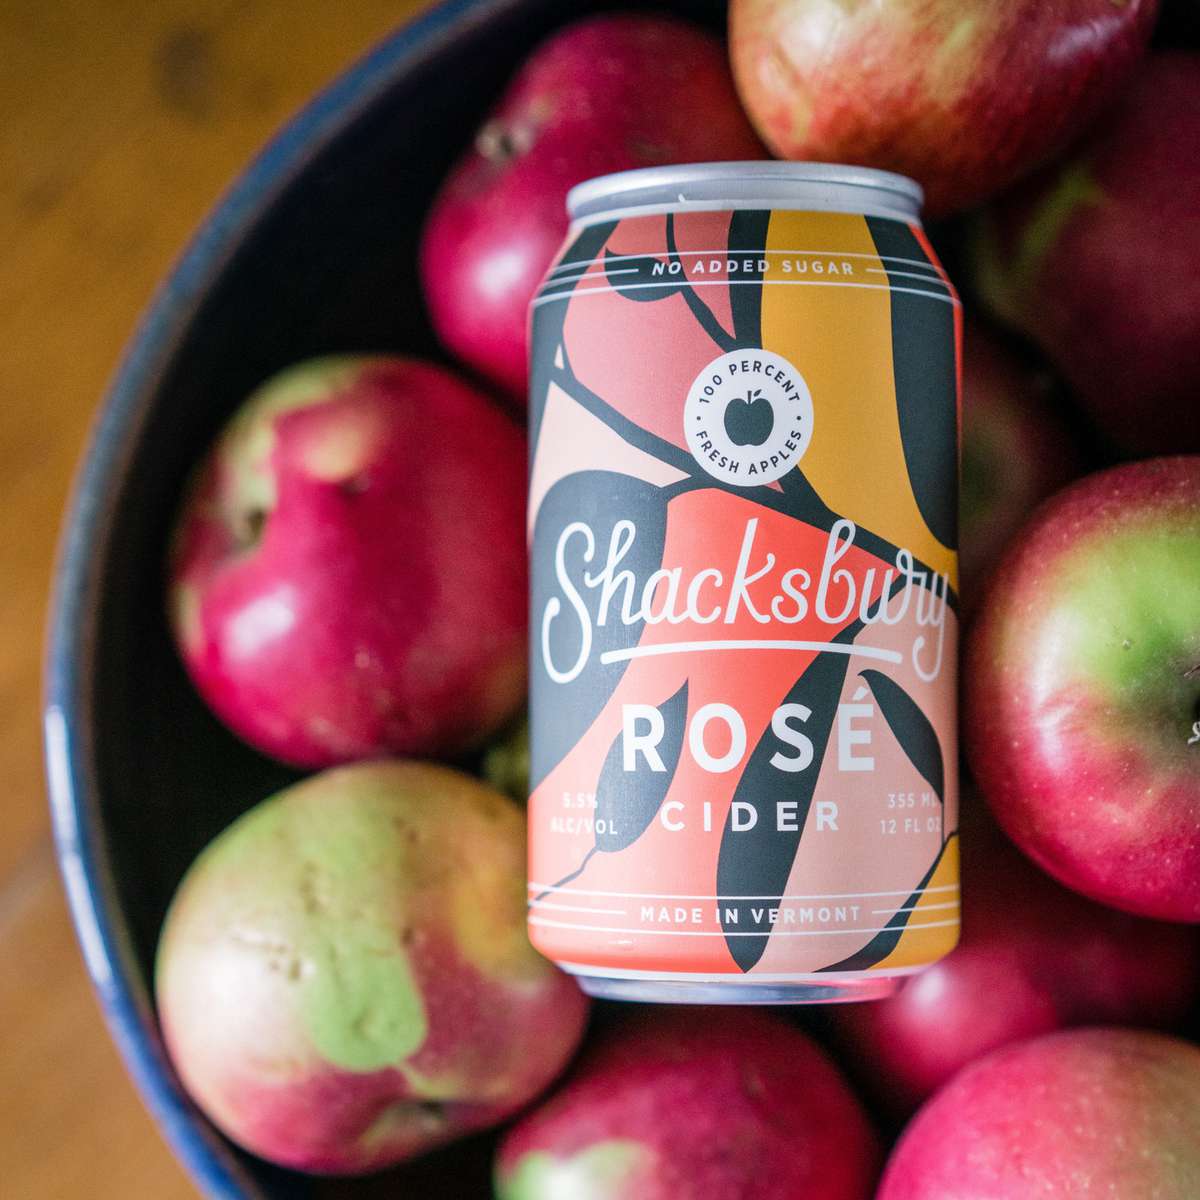 Shacksbury Rose Cider